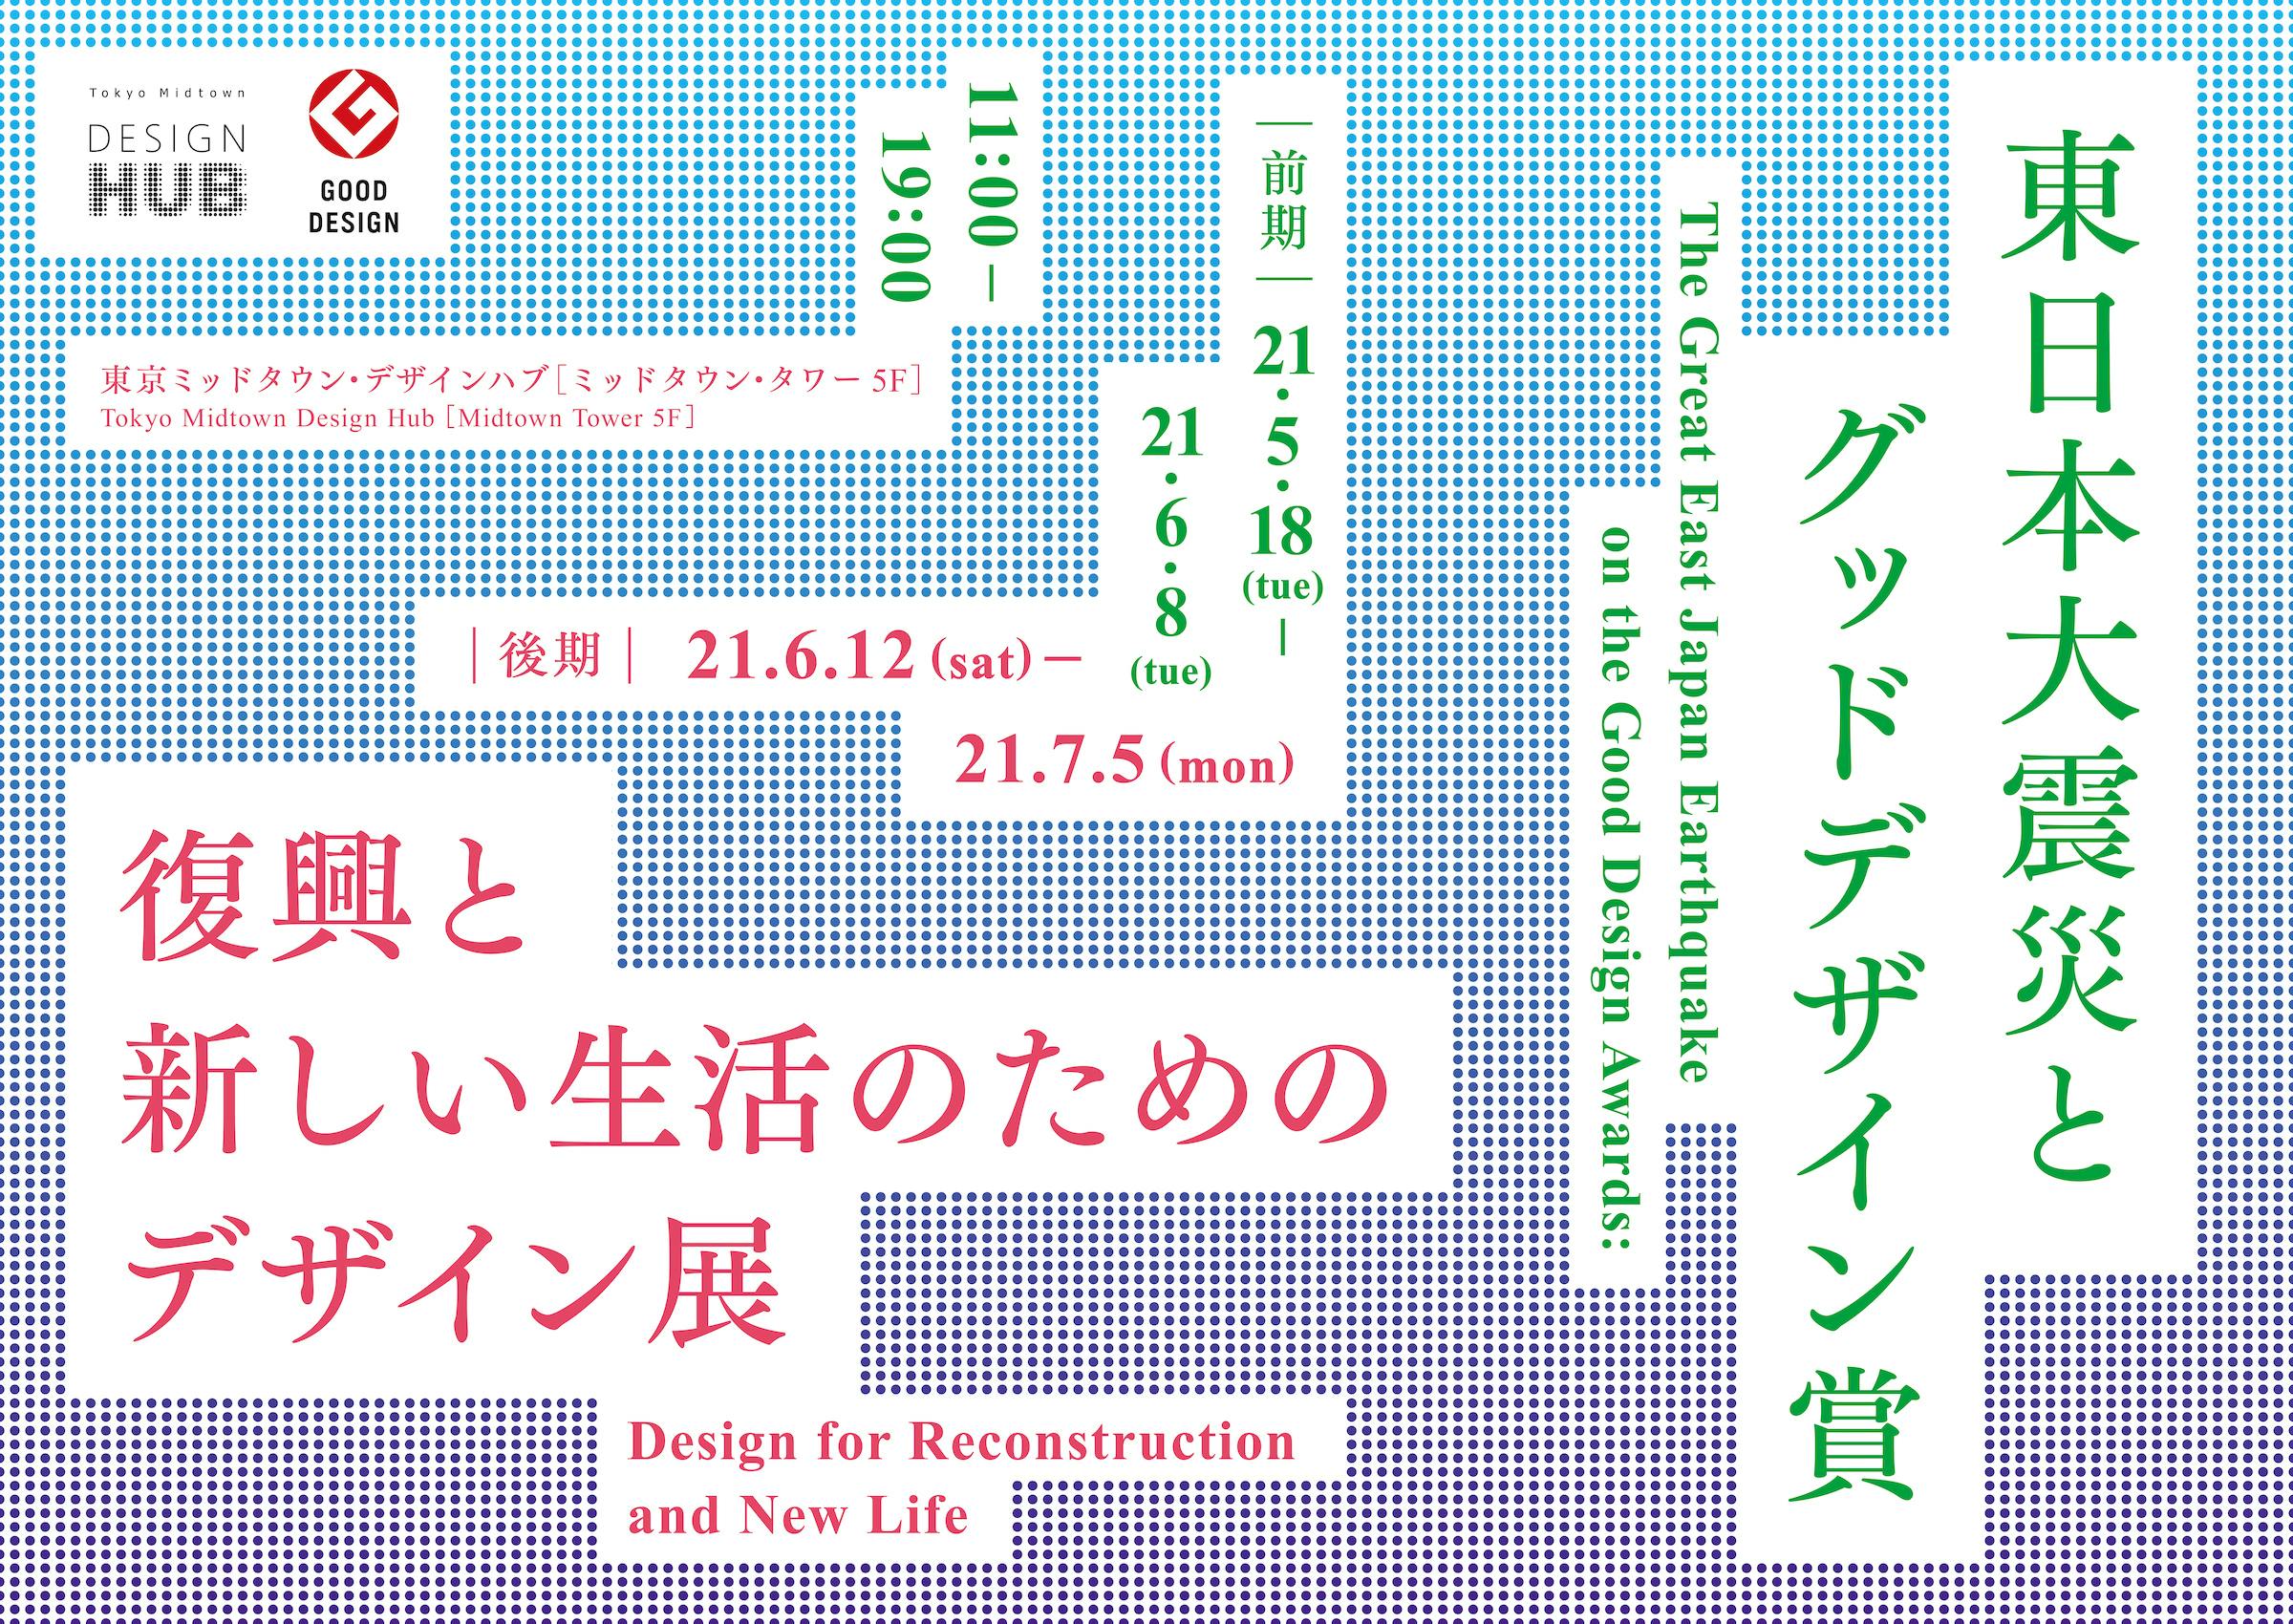 東日本大震災とグッドデザイン賞　 復興と新しい生活のためのデザイン展